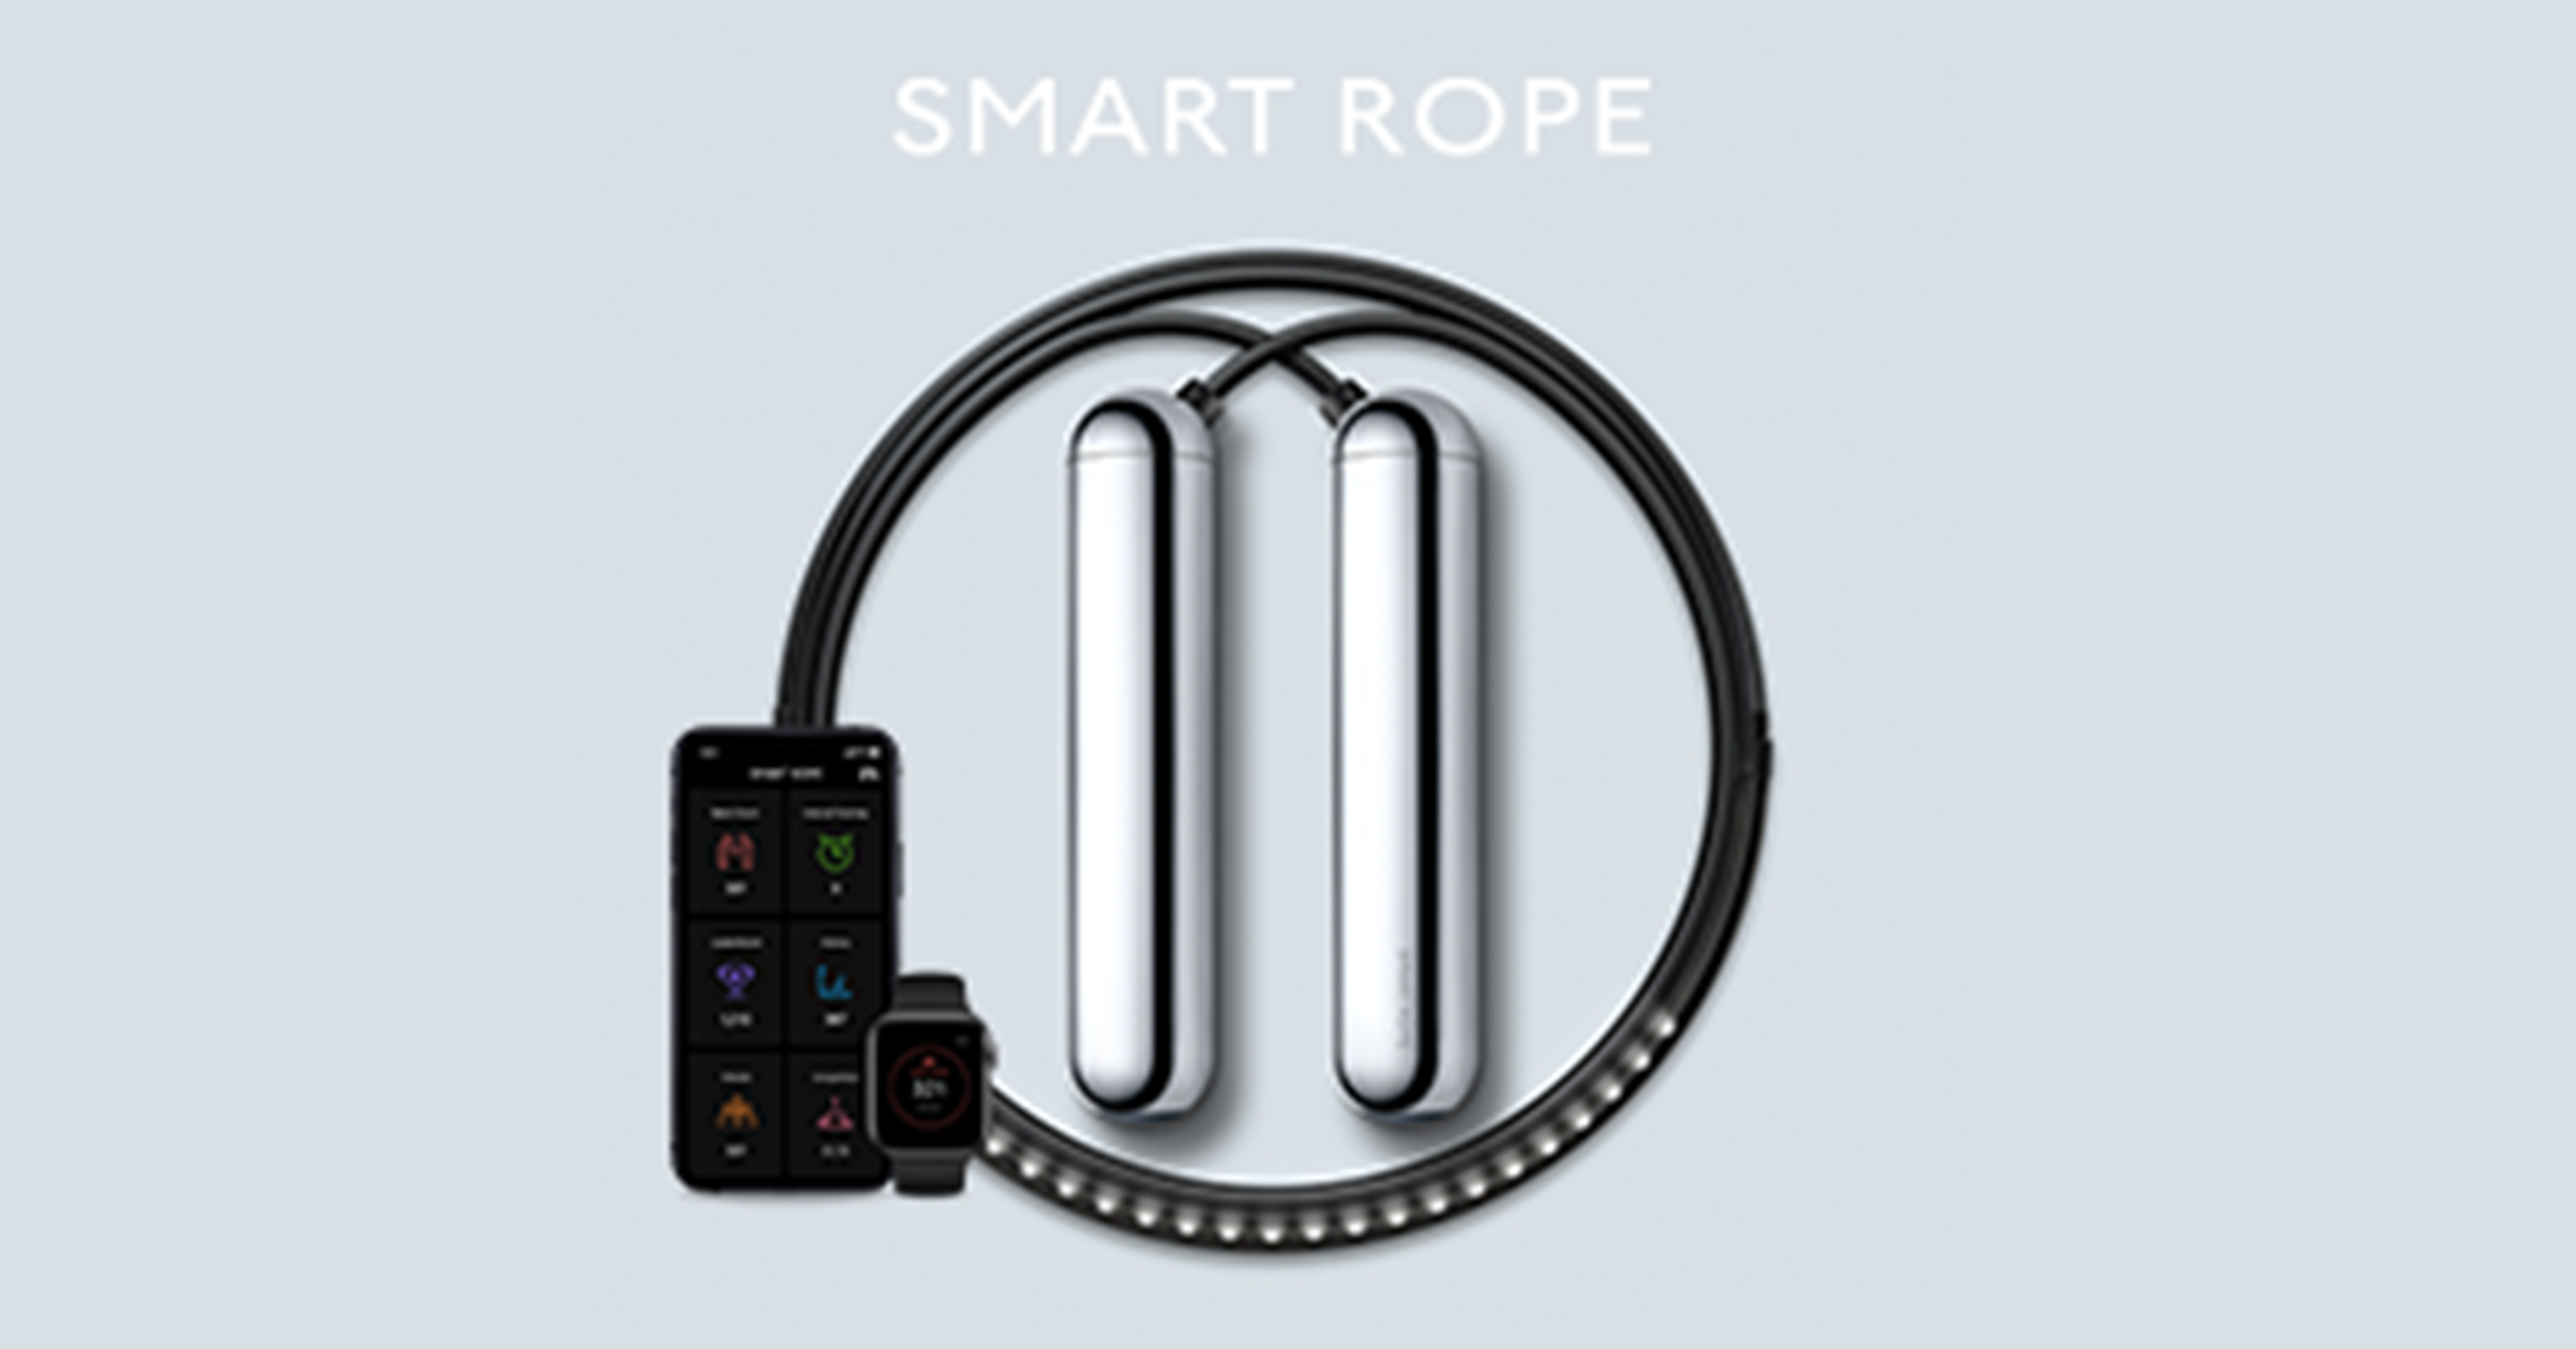 Smart Rope Hèt slimme springtouw, gekoppeld aan smartphone! – Smartrope .nl